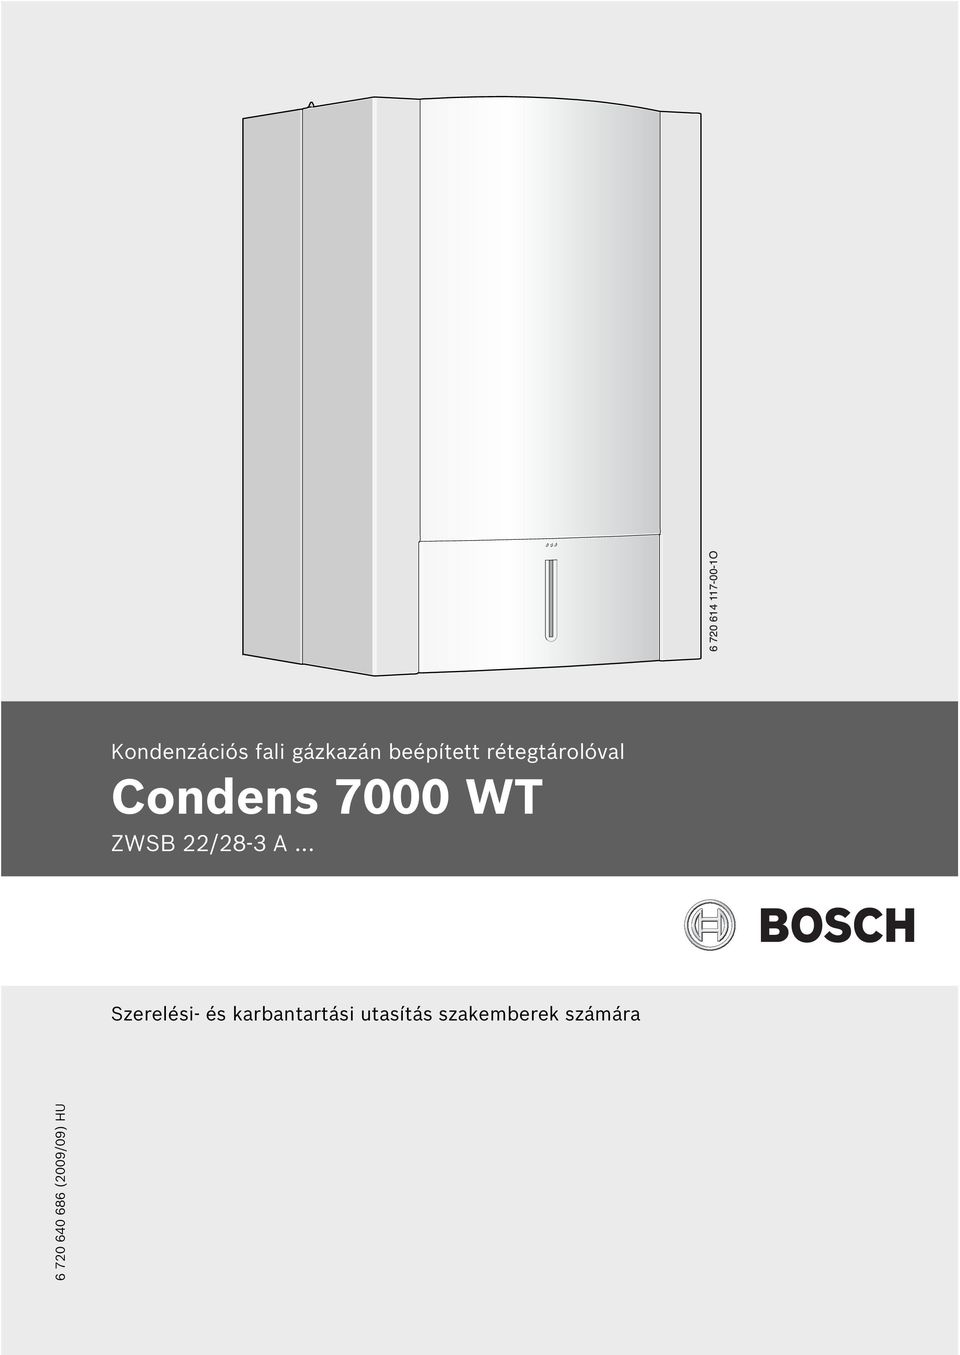 Condens 7000 WT ZWSB /8-3 A.